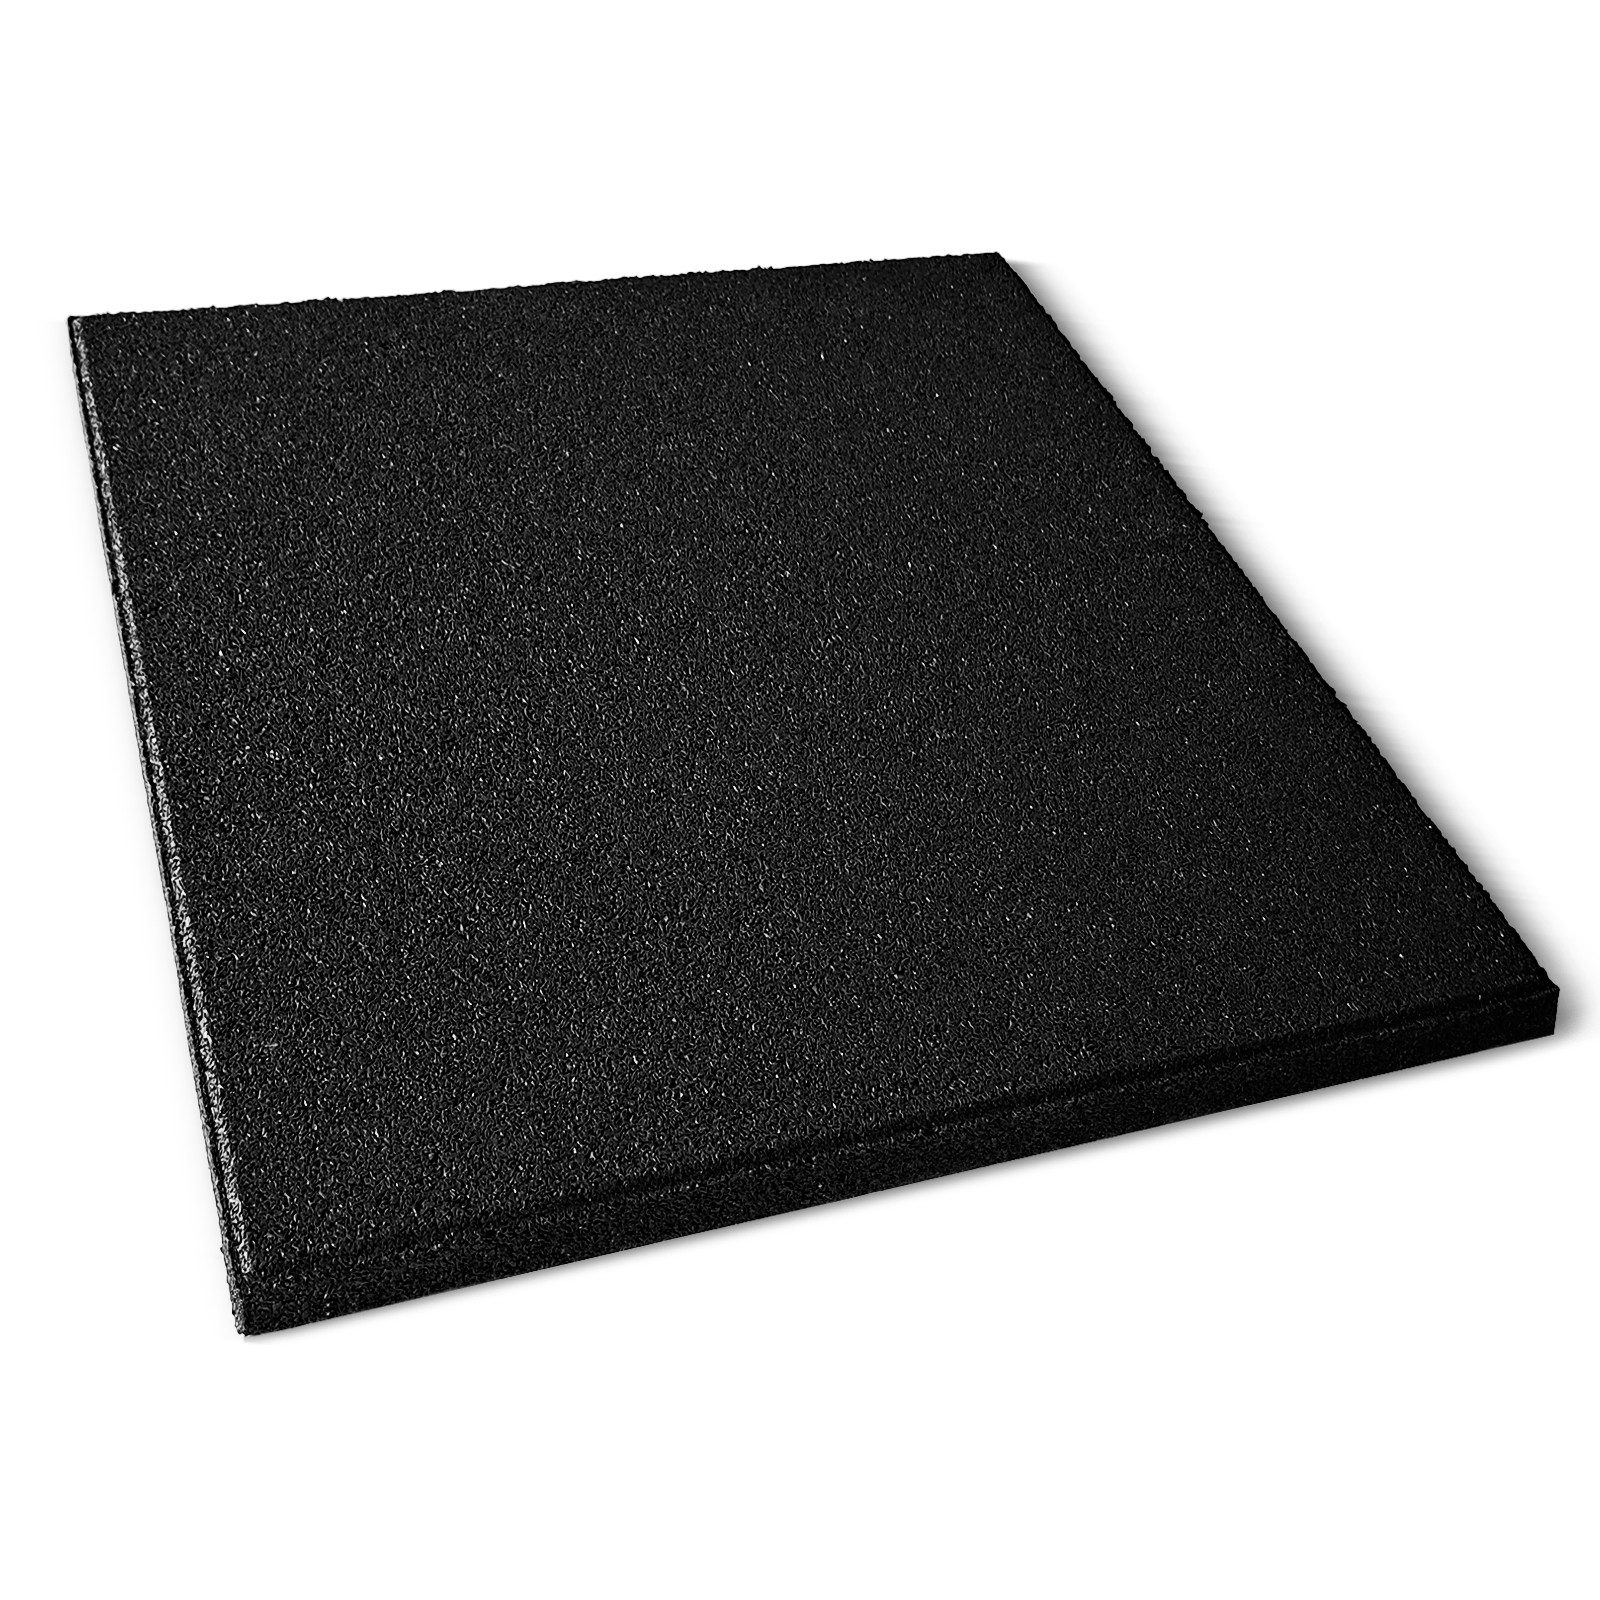 Karat Outdoor-Bodenplatte Fallschutzmatte Play Protect, Bodenschutzmatte mit Drainage, In vielen Farben, 50 x 50 cm